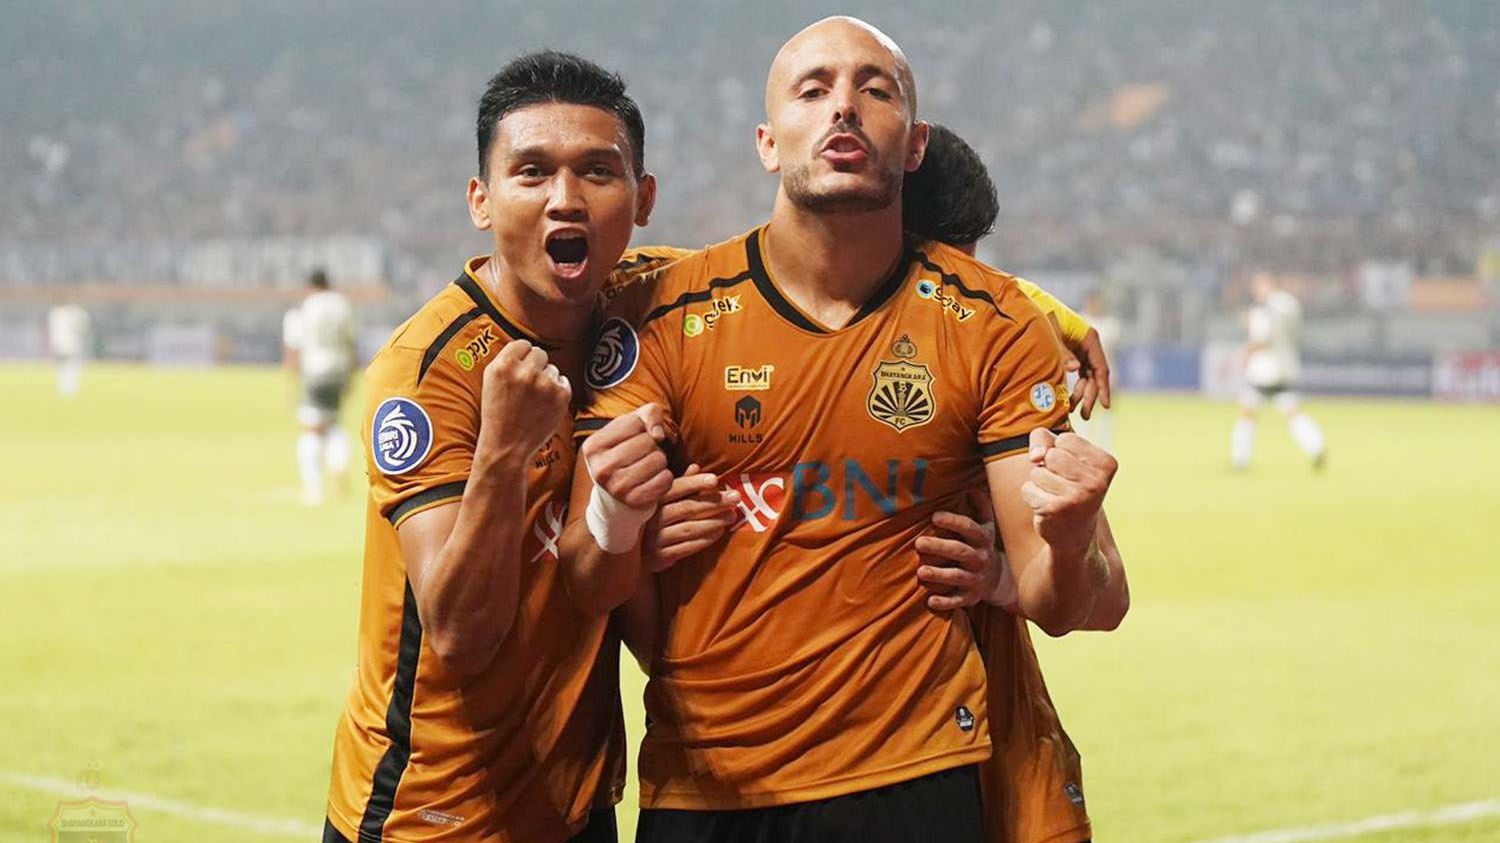 Momen selebrasi Youssef Ezzejjari (kepala plontos) bersama rekannya Dendy Sulistyawan setelah mencetak gol untuk Bhayangkara FC di Liga 1 2022-2023 saat melawan Persib Bandung pada 24 Juli 2022.